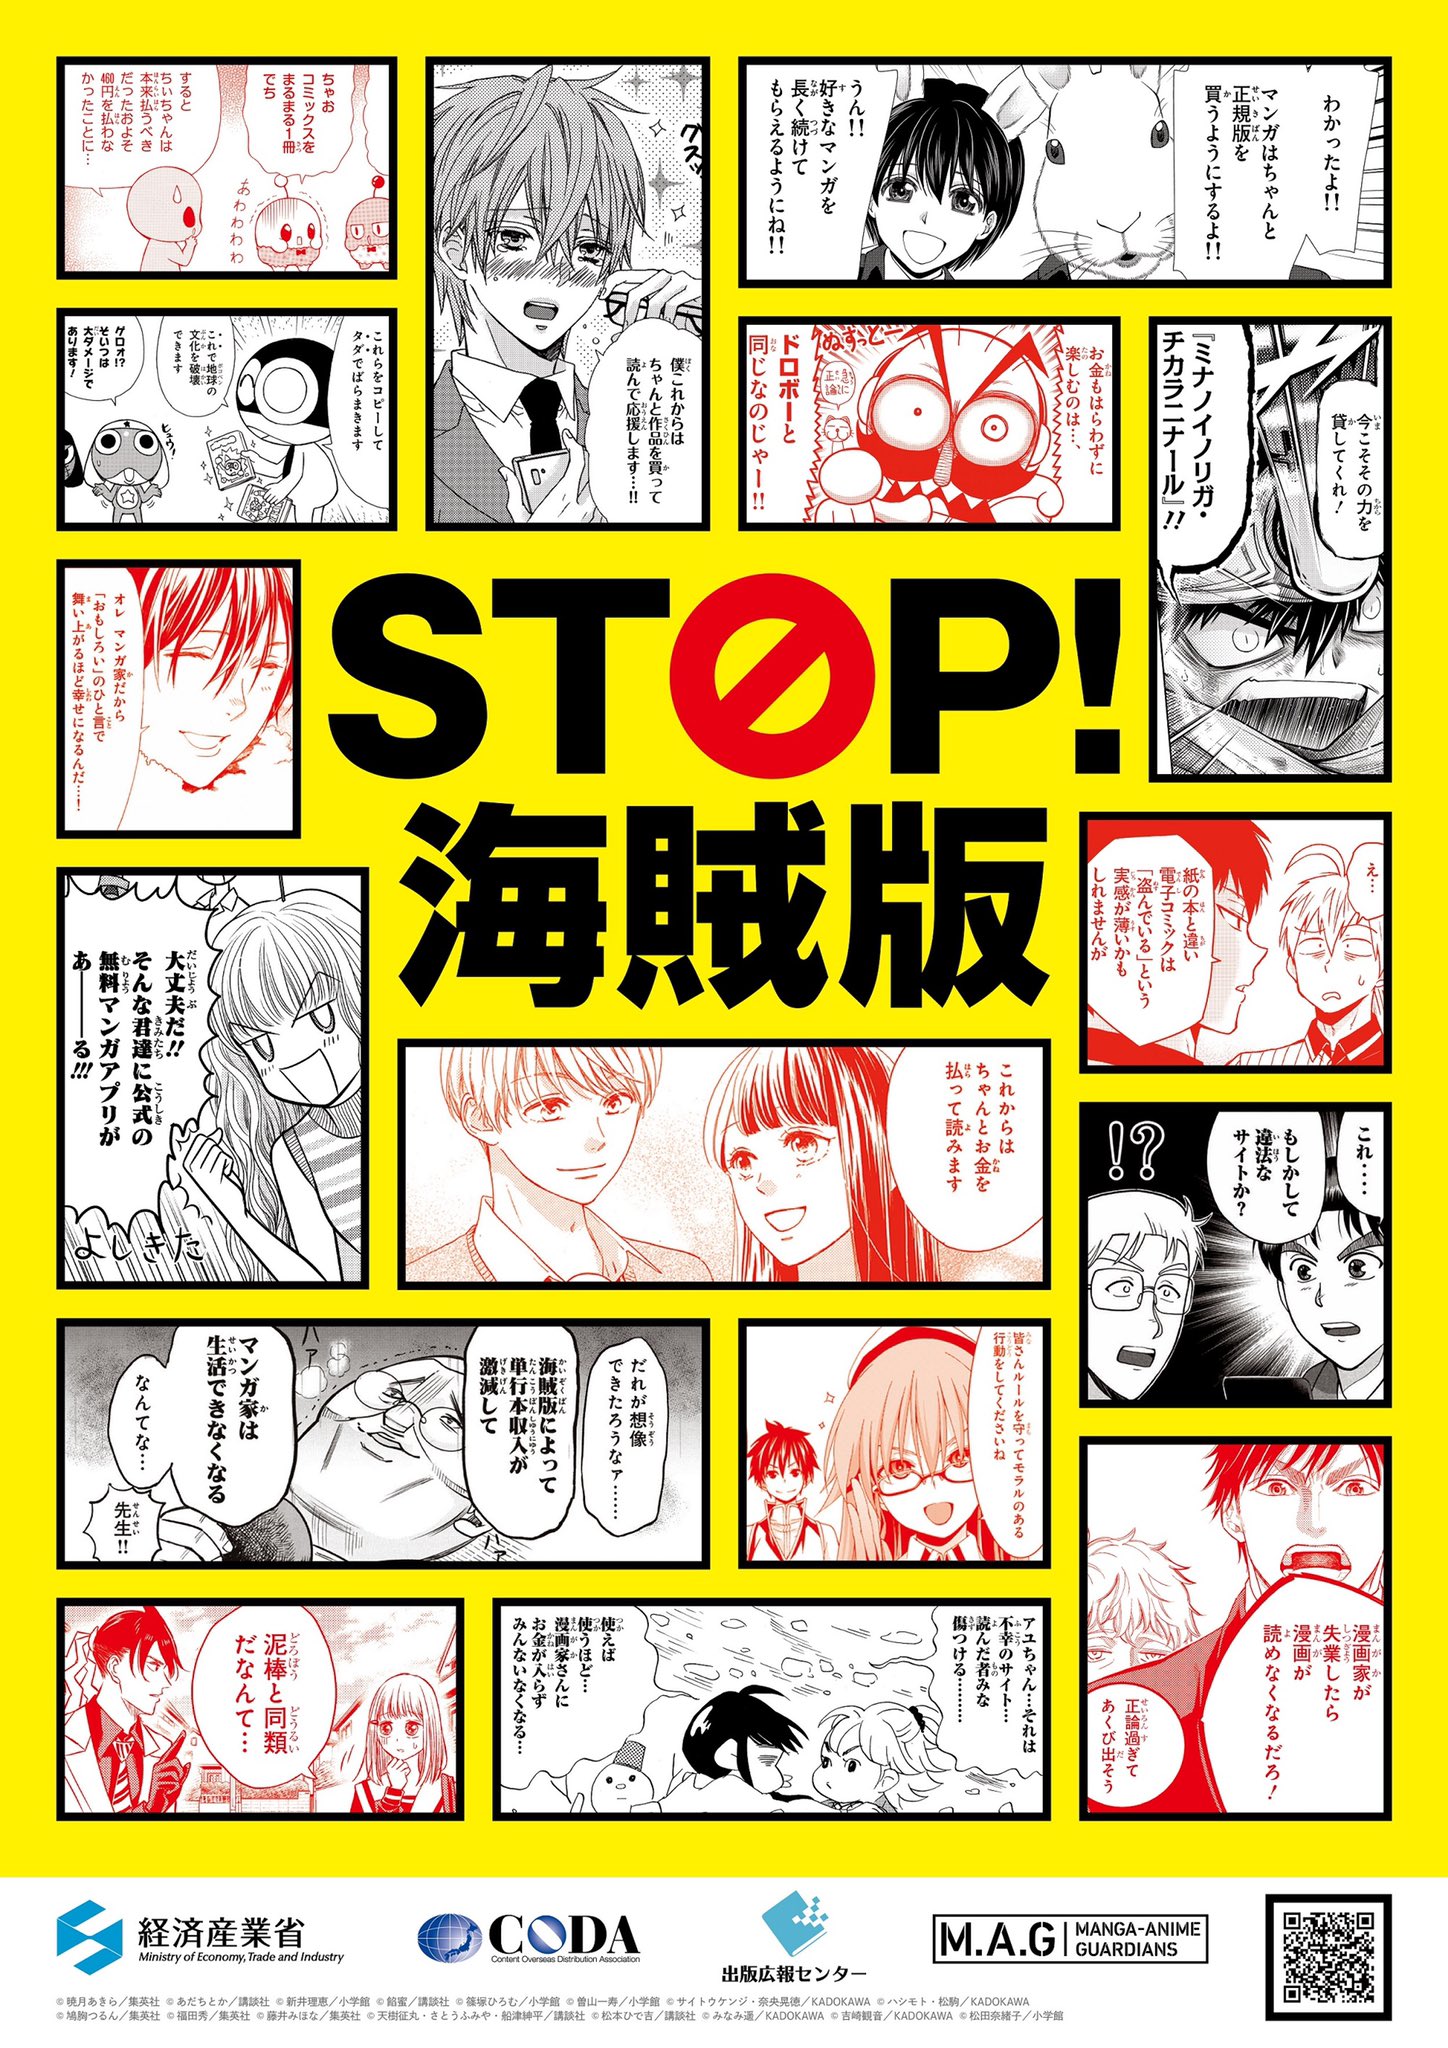 STOP! PIRACY thumbnail